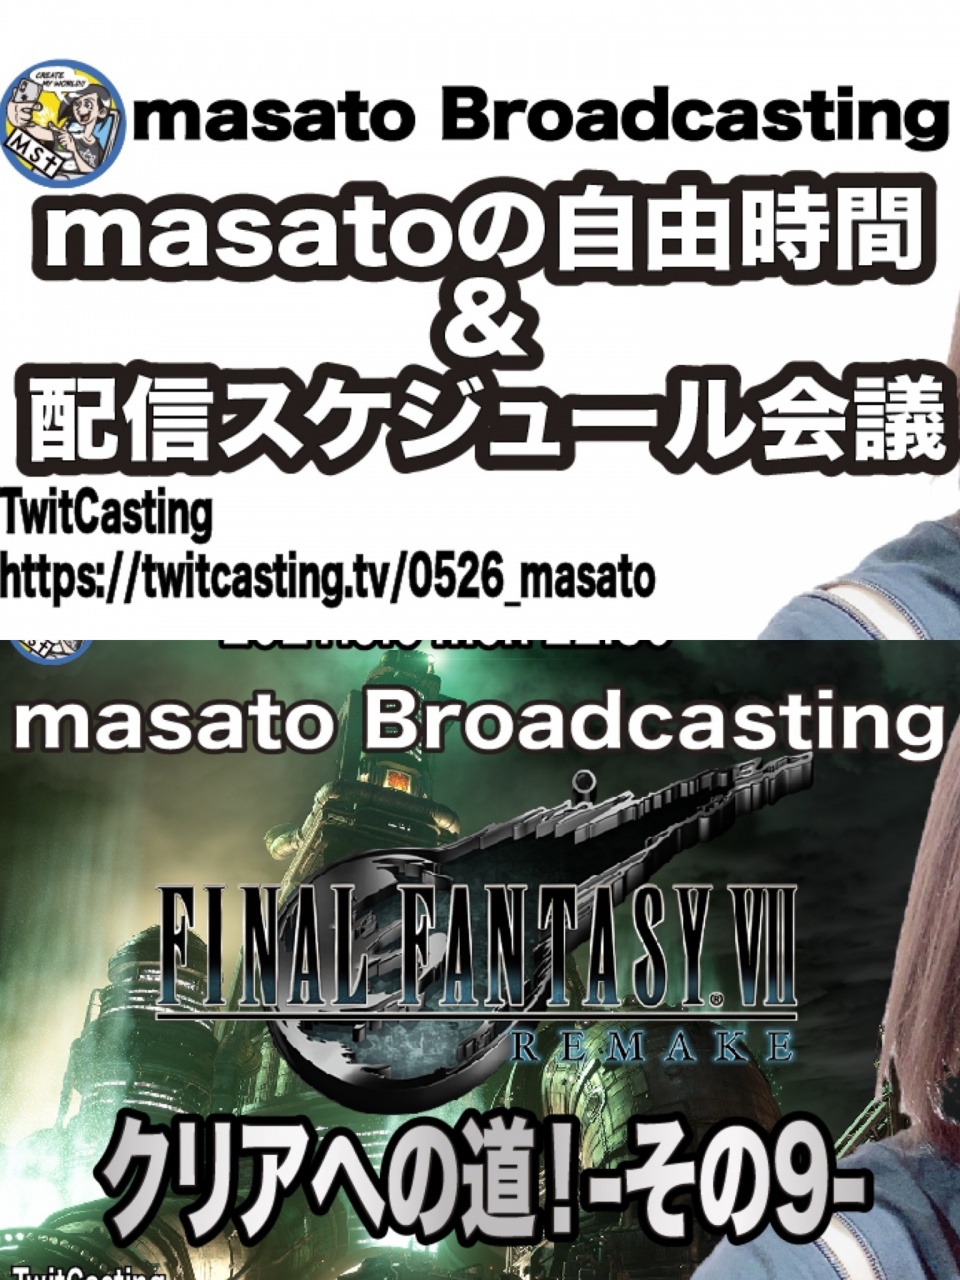 【ツイキャス】masatoの配信スケジュール会議 & FF7リ